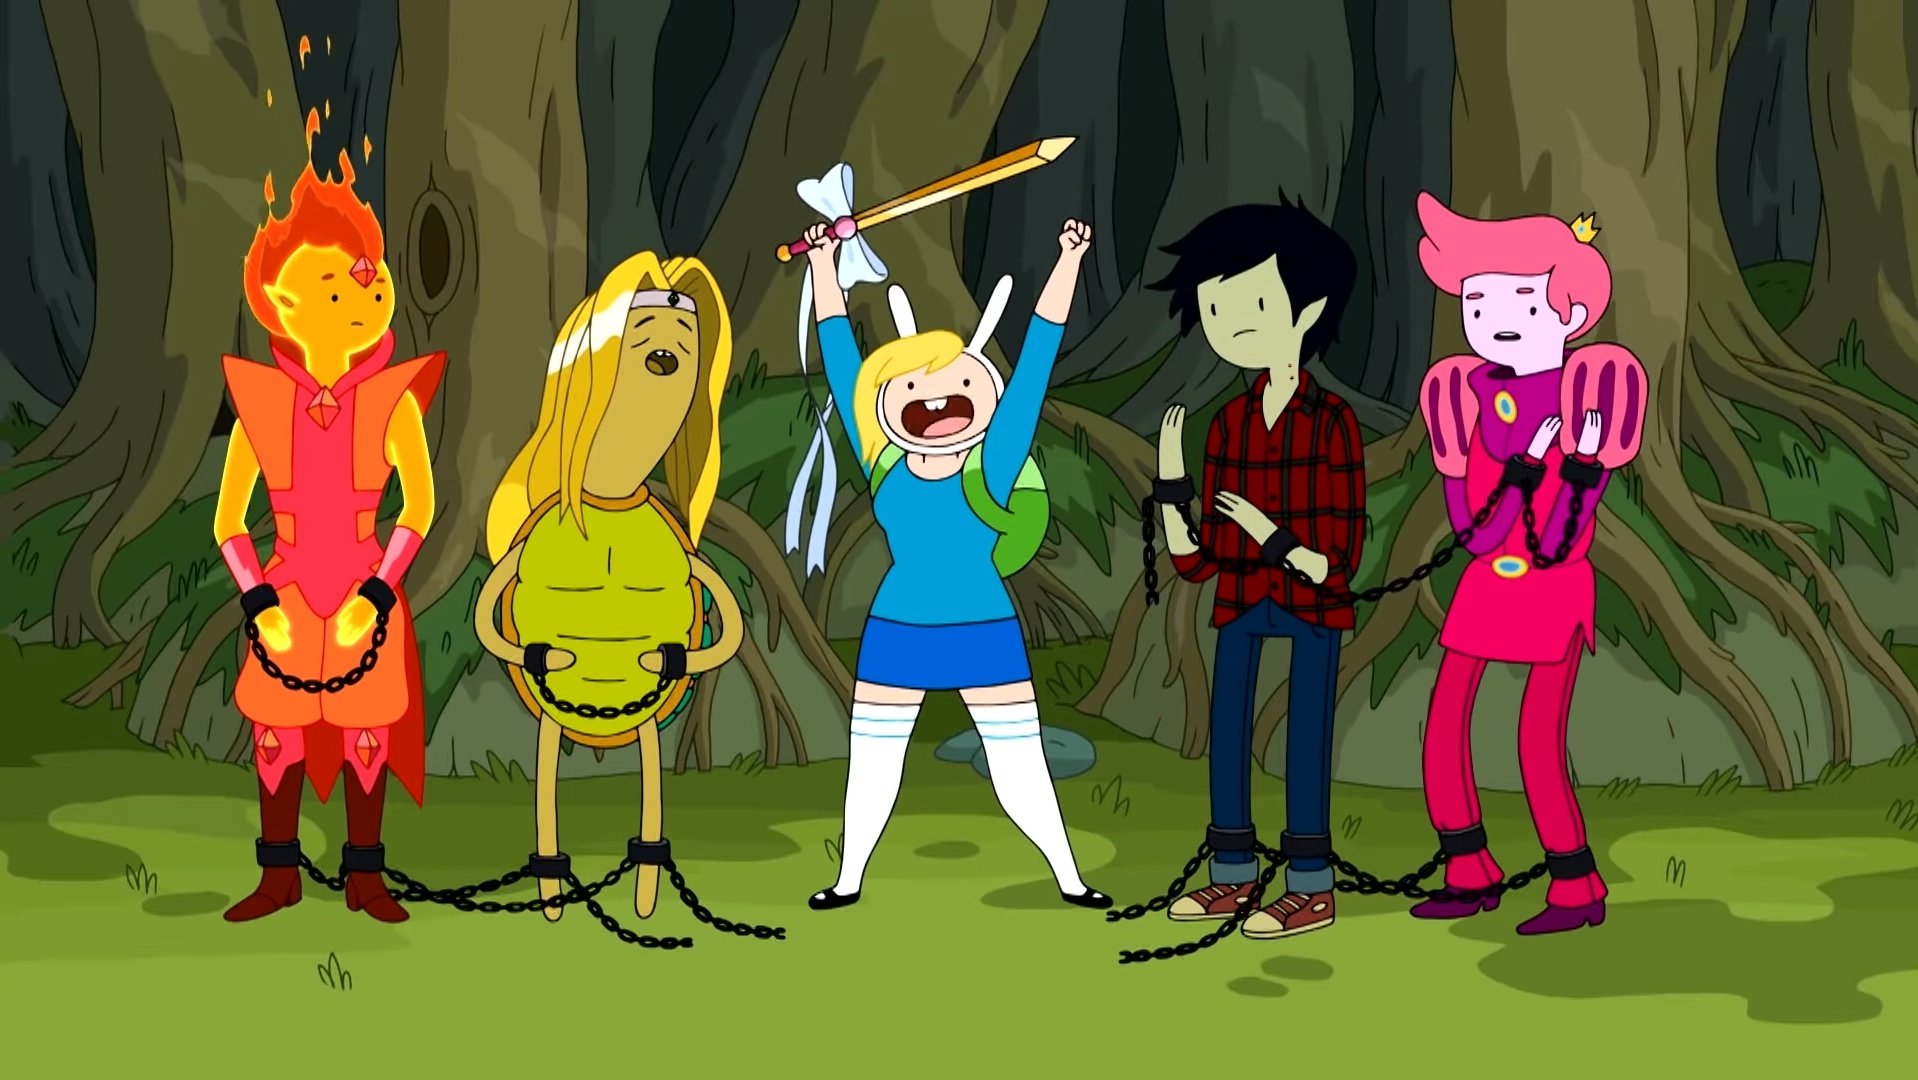 Geekversez on X: 'Adventure Time: Fionna and Cake' será a primeira série  de 'Hora de Aventura' voltada para o público jovem adulto.   / X